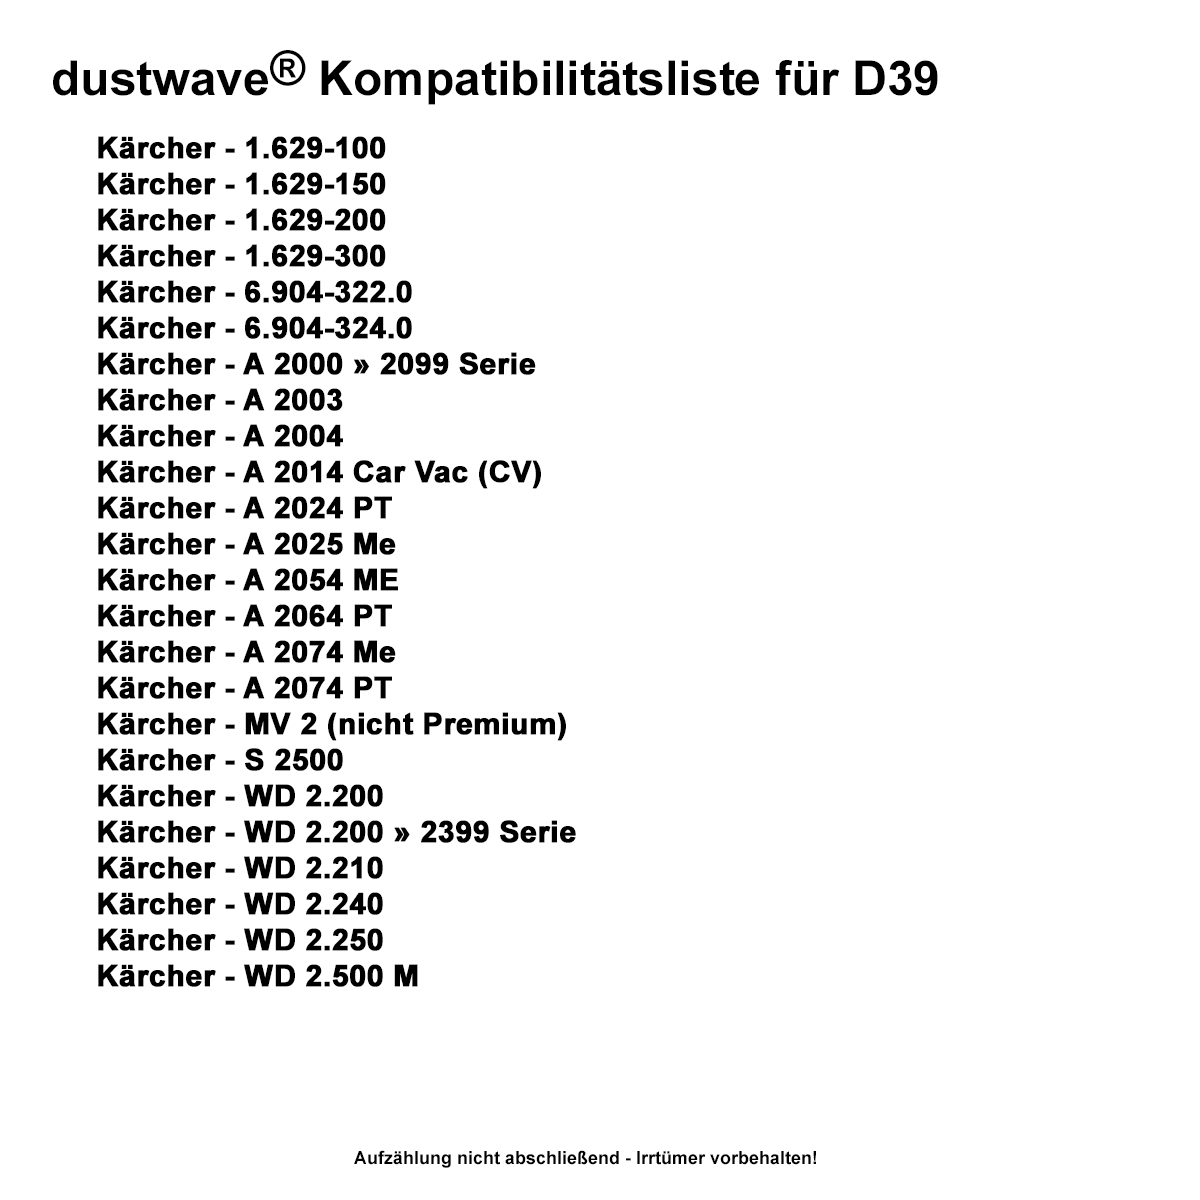 Dustwave® 20 Staubsaugerbeutel für Hoover BD S5125011 - hocheffizient, mehrlagiges Mikrovlies mit Hygieneverschluss - Made in Germany